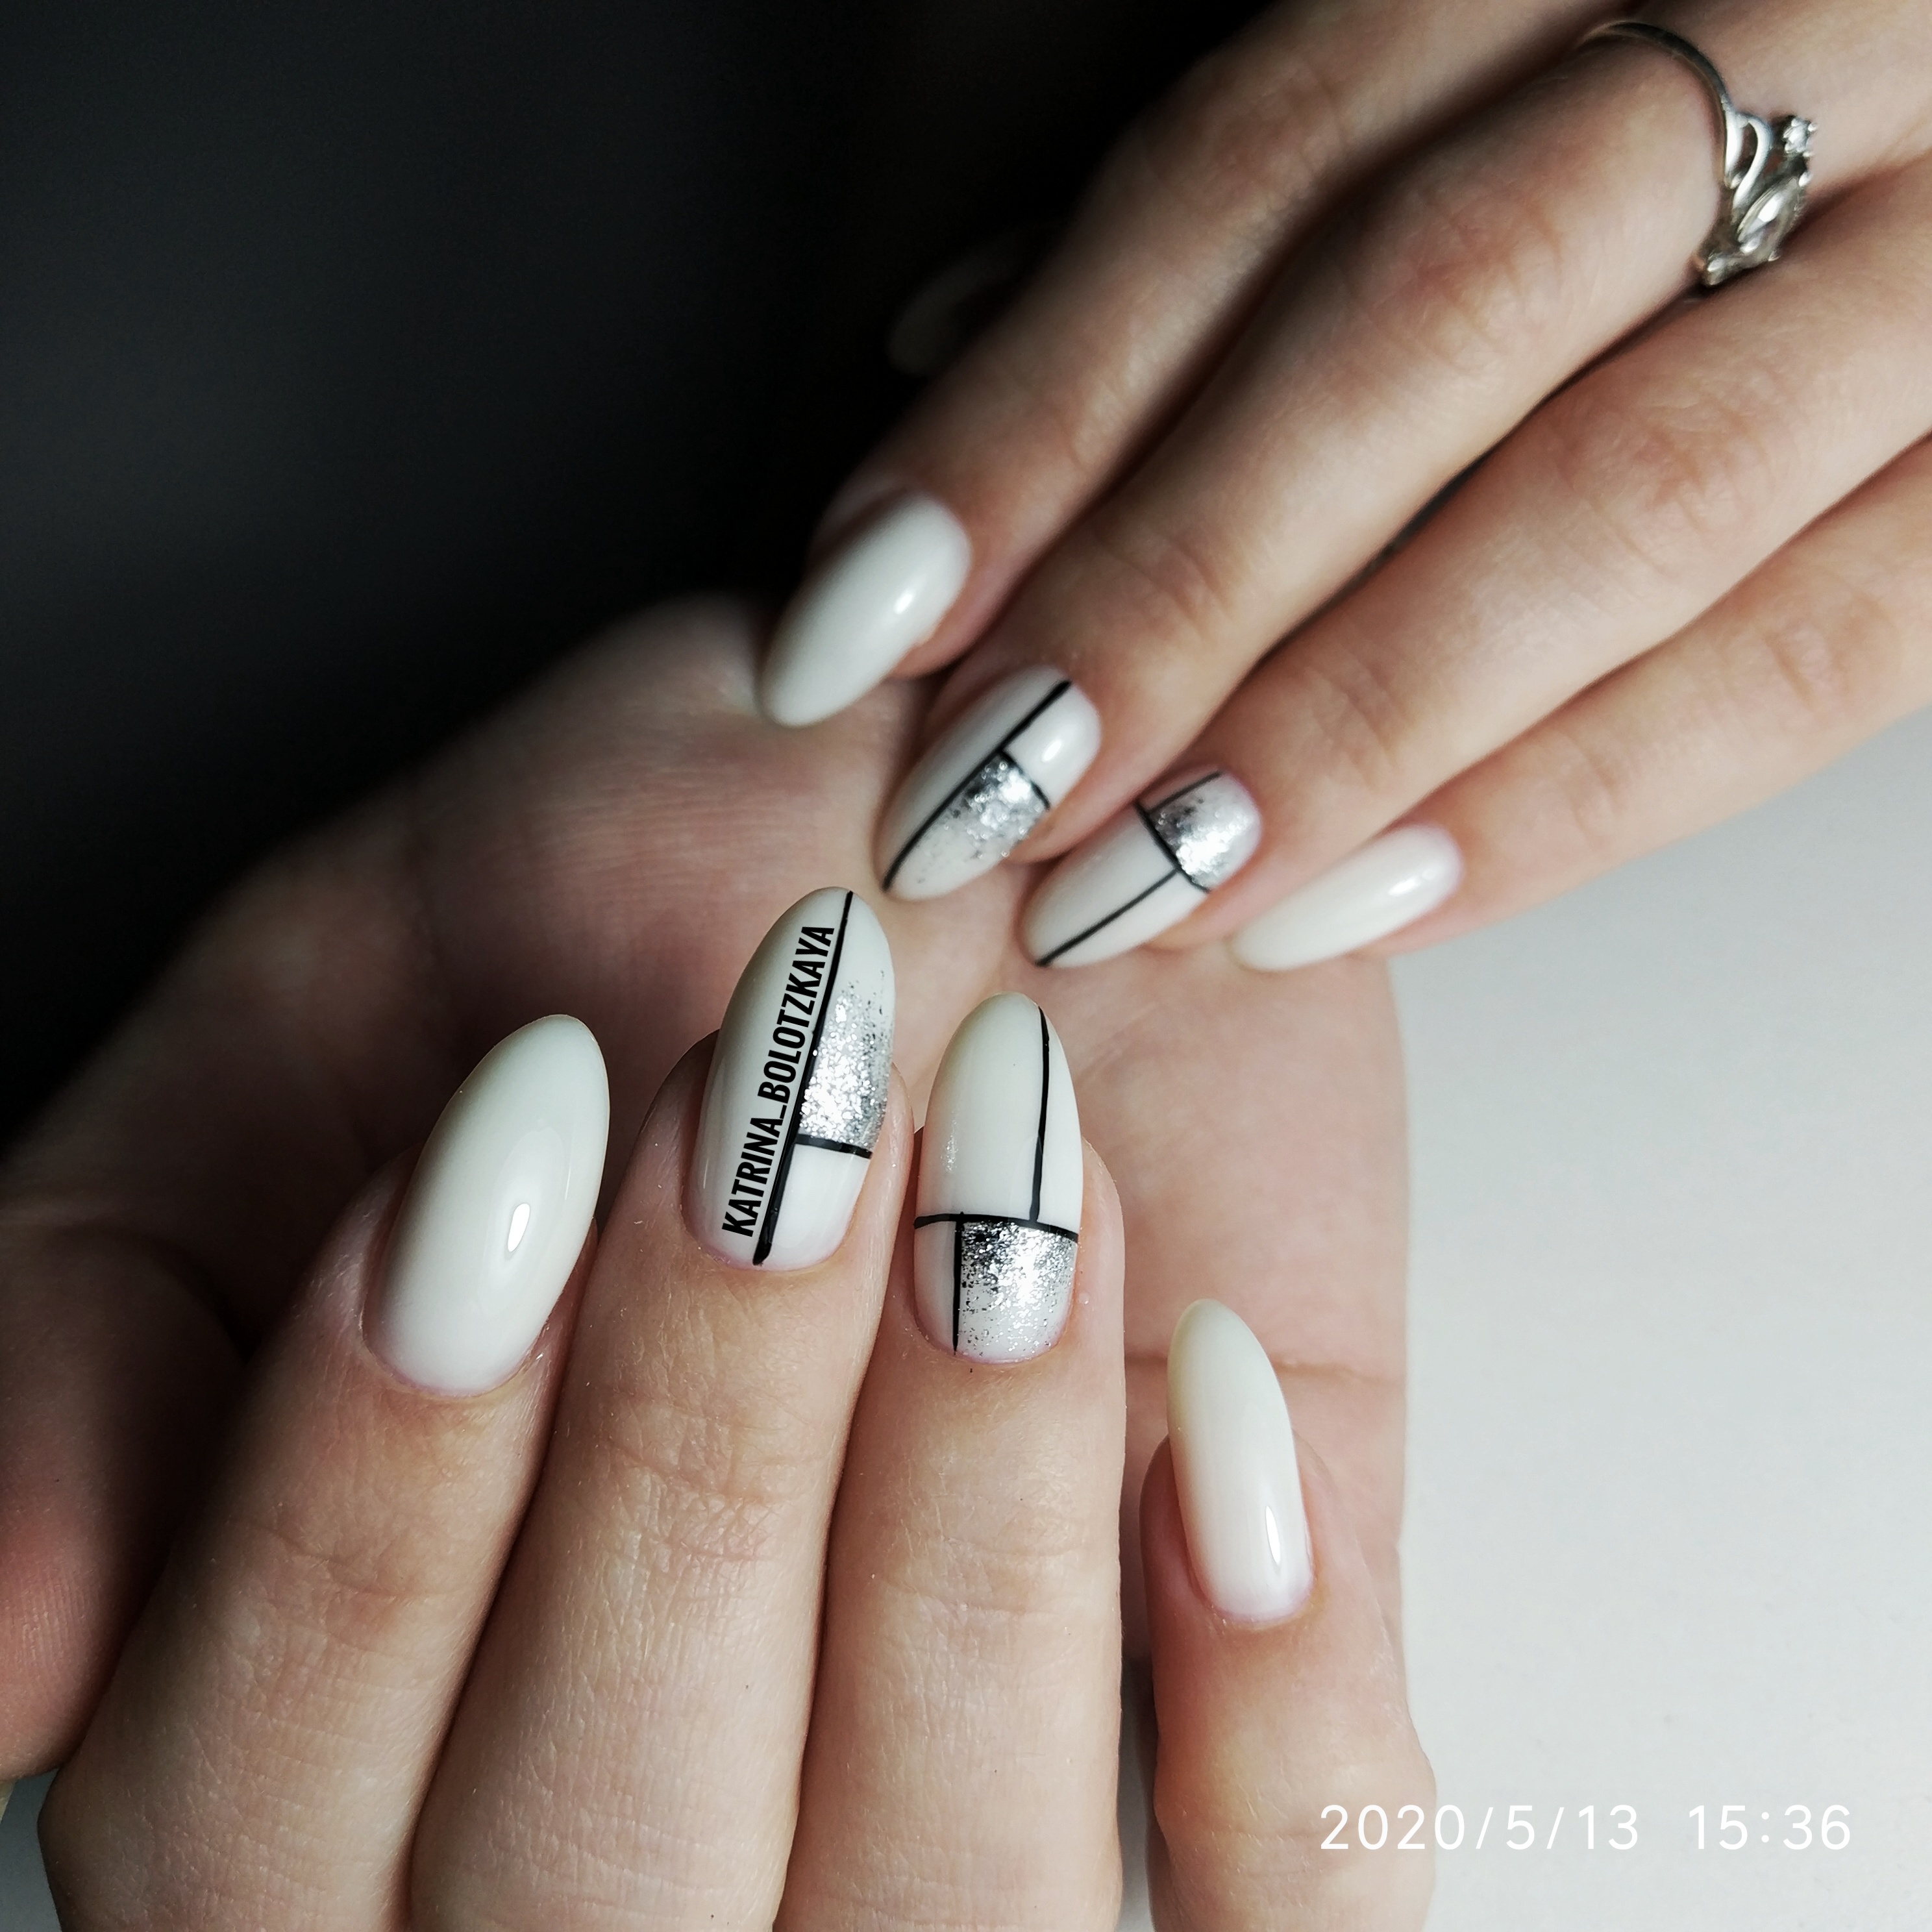 Геометрический маникюр с надписями и серебряными блестками в молочном цвете на длинные ногти.